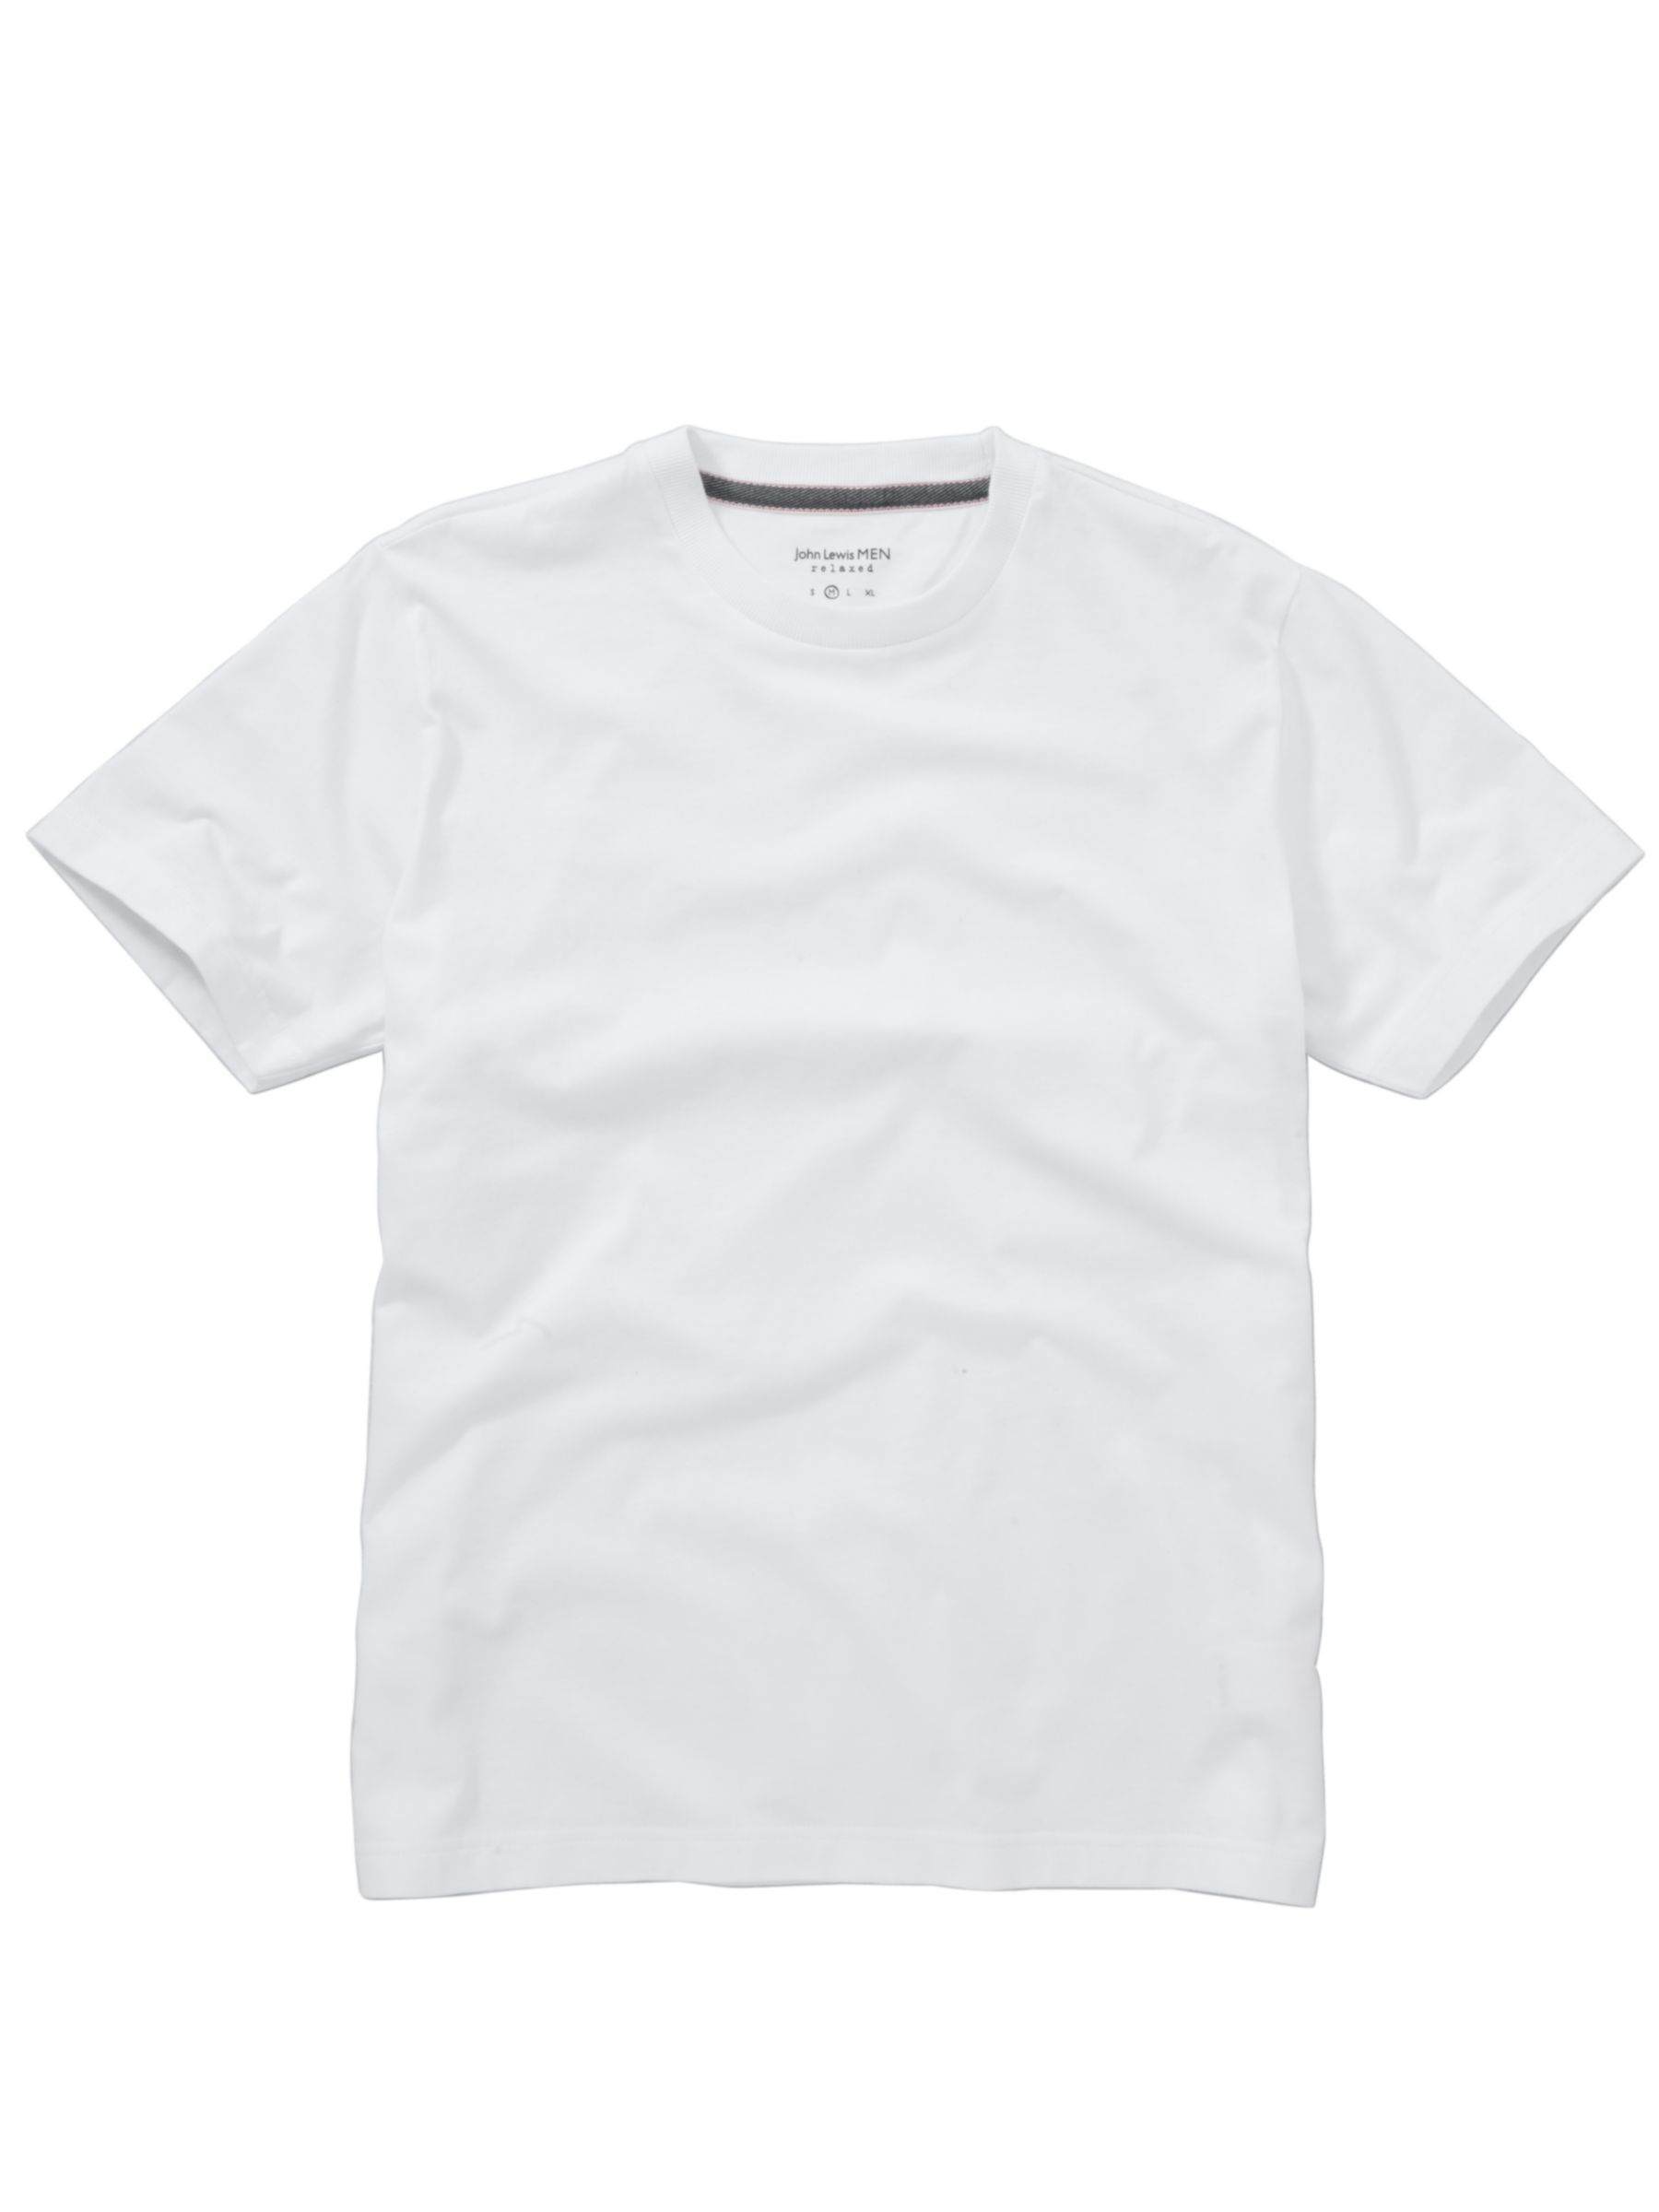 John Lewis Men Cotton Crew Neck T-Shirt, White